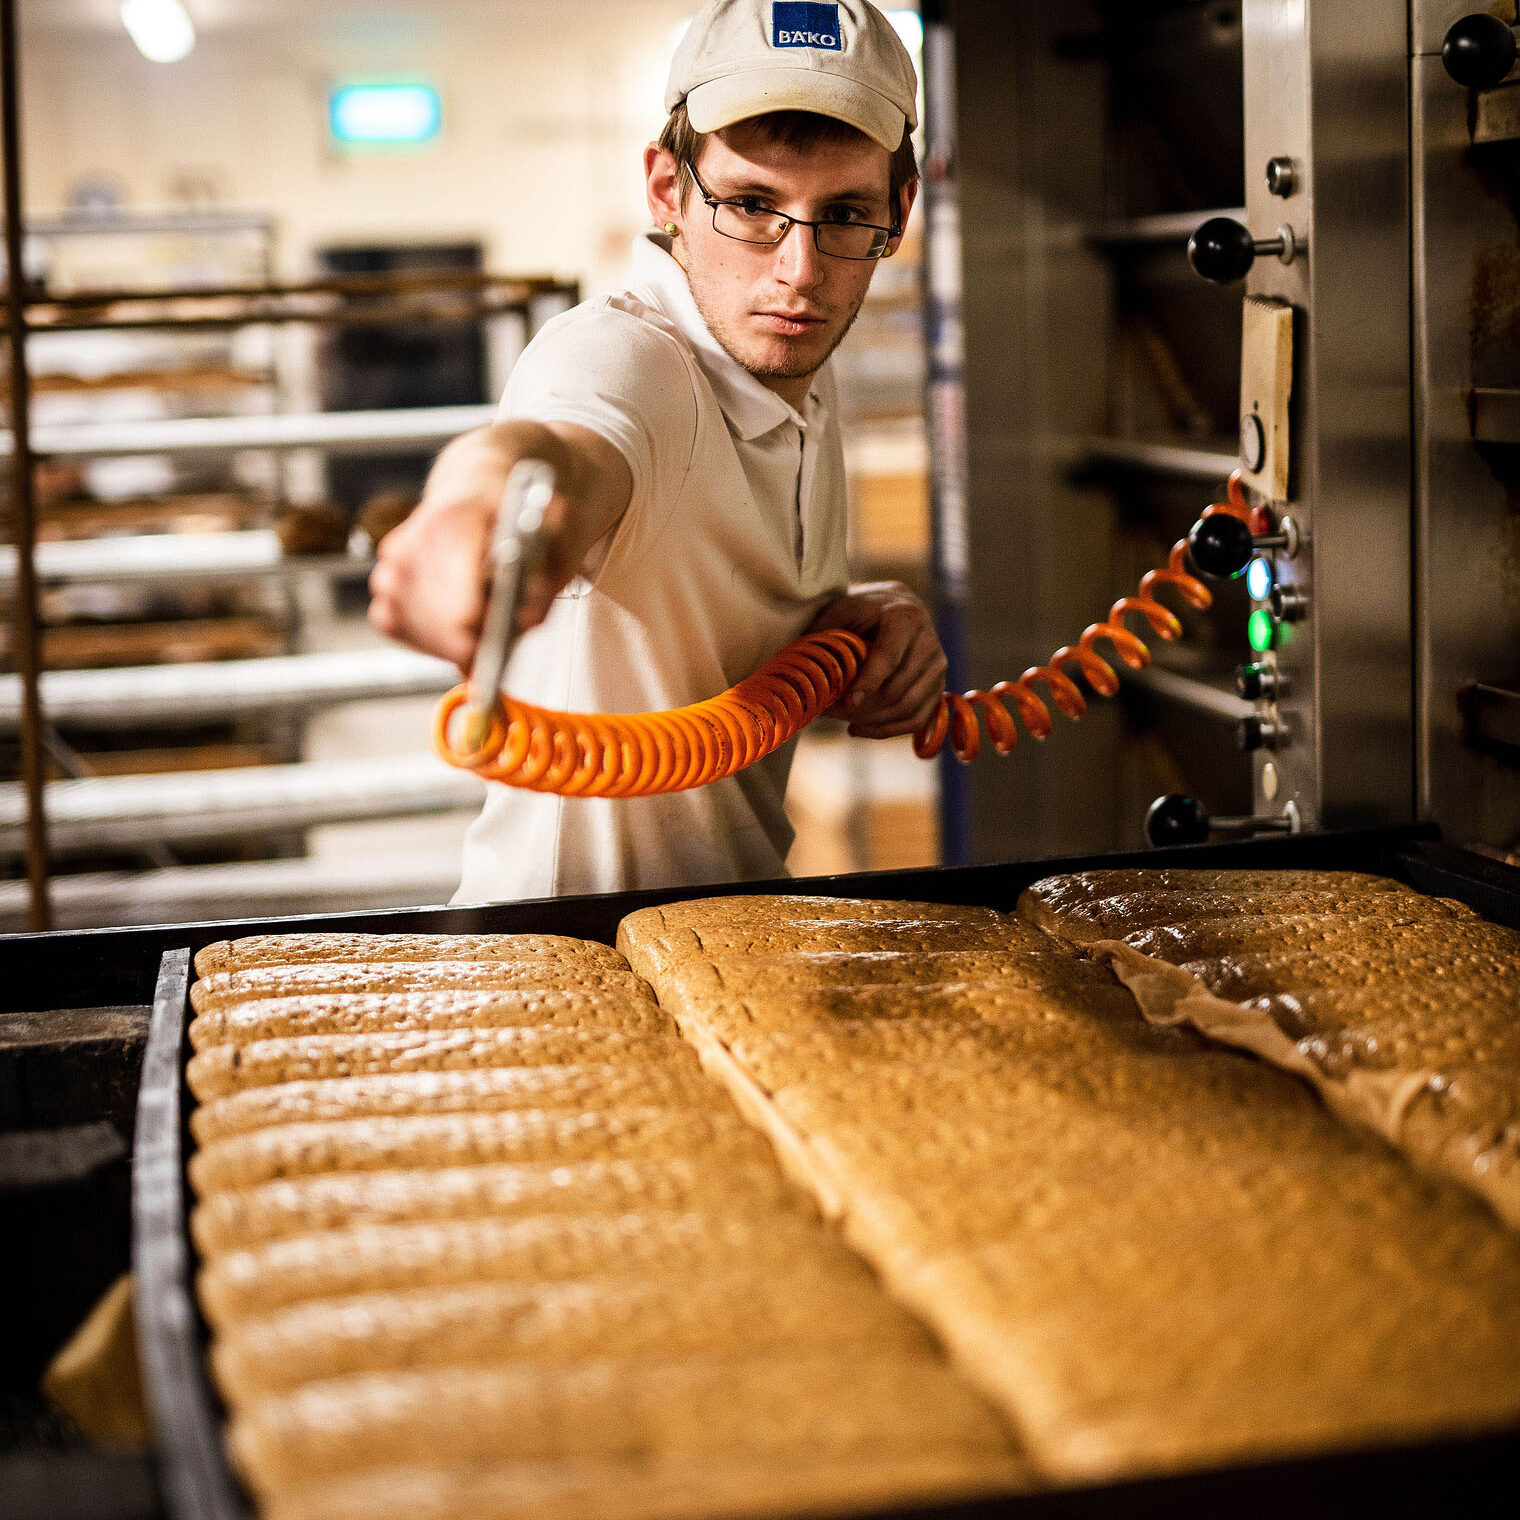 Geselle mit Brot in der Igel Bäckerei von Jörn Holste